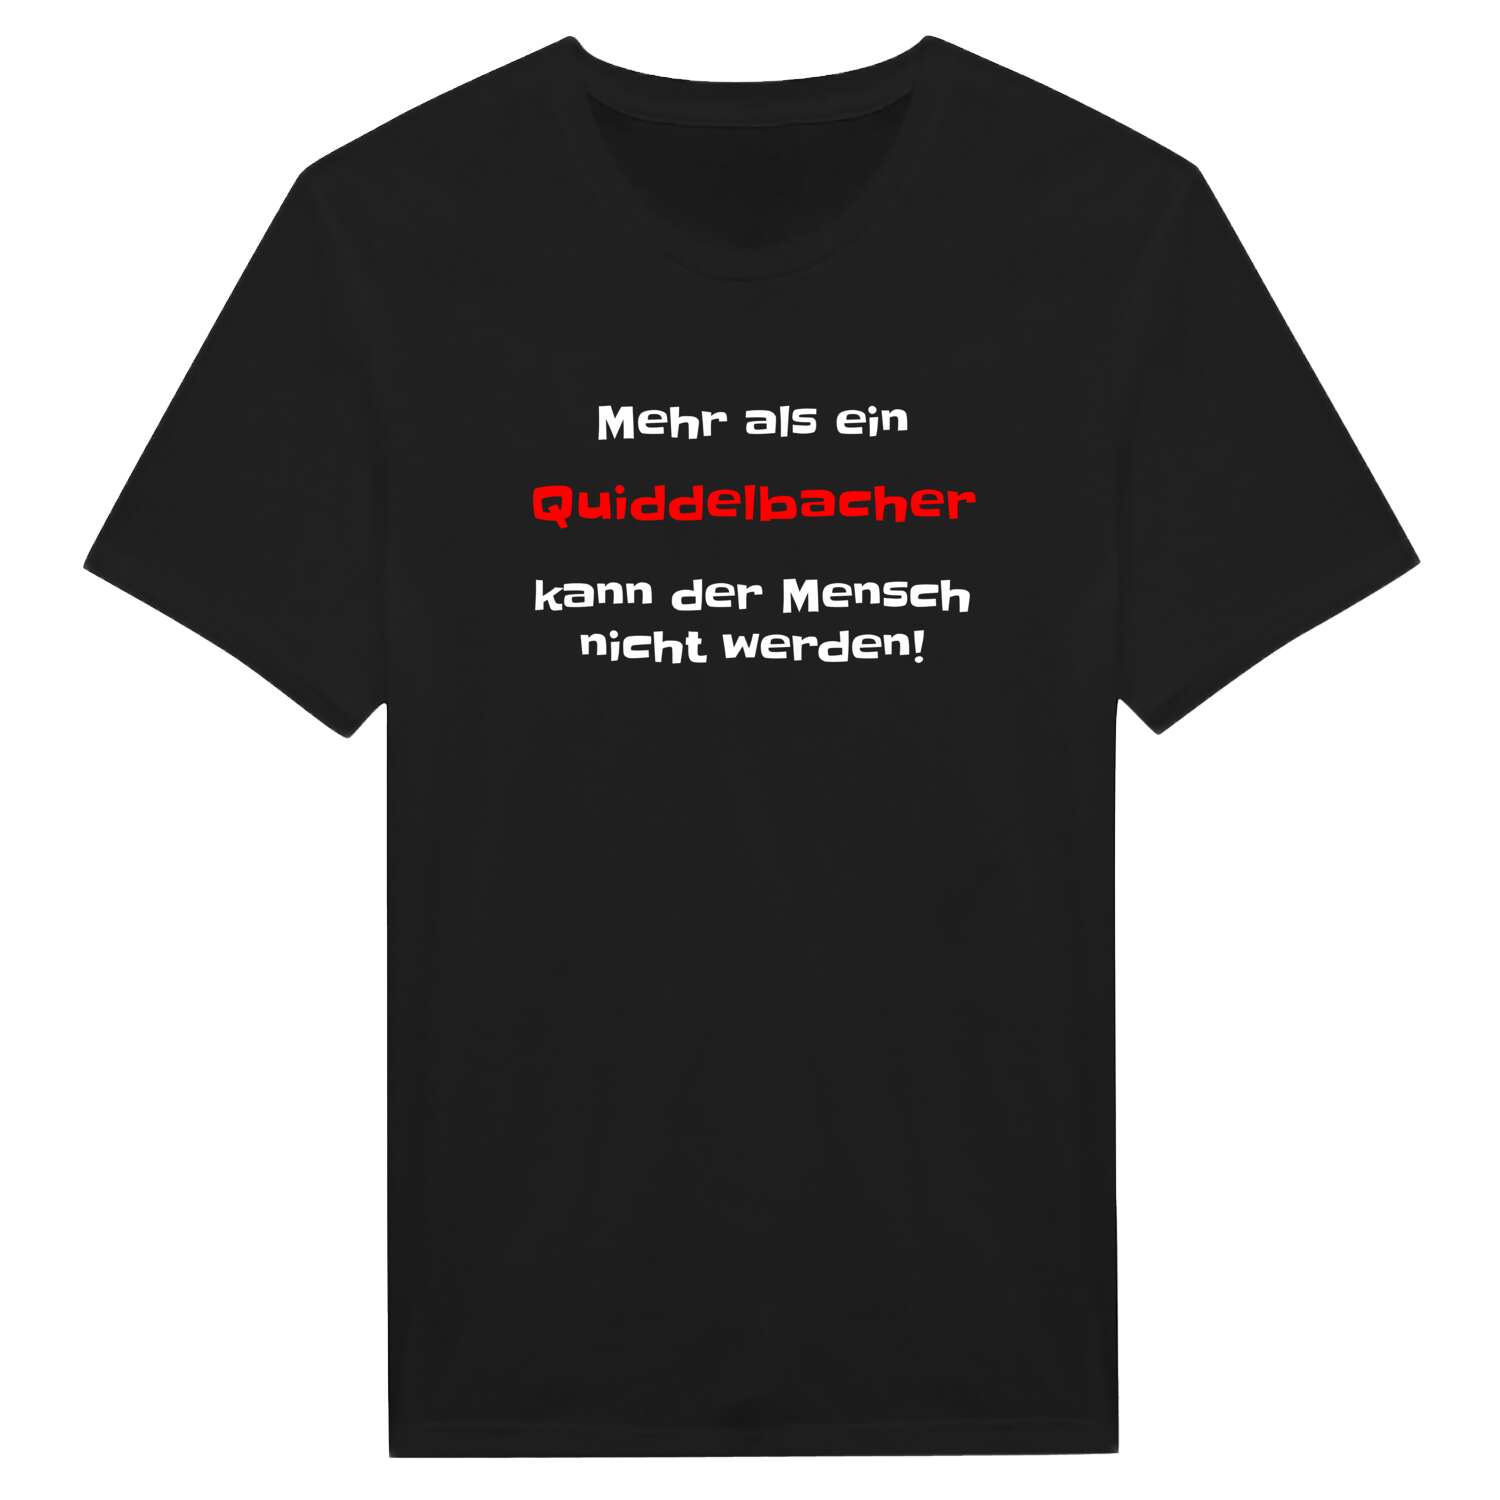 Quiddelbach T-Shirt »Mehr als ein«